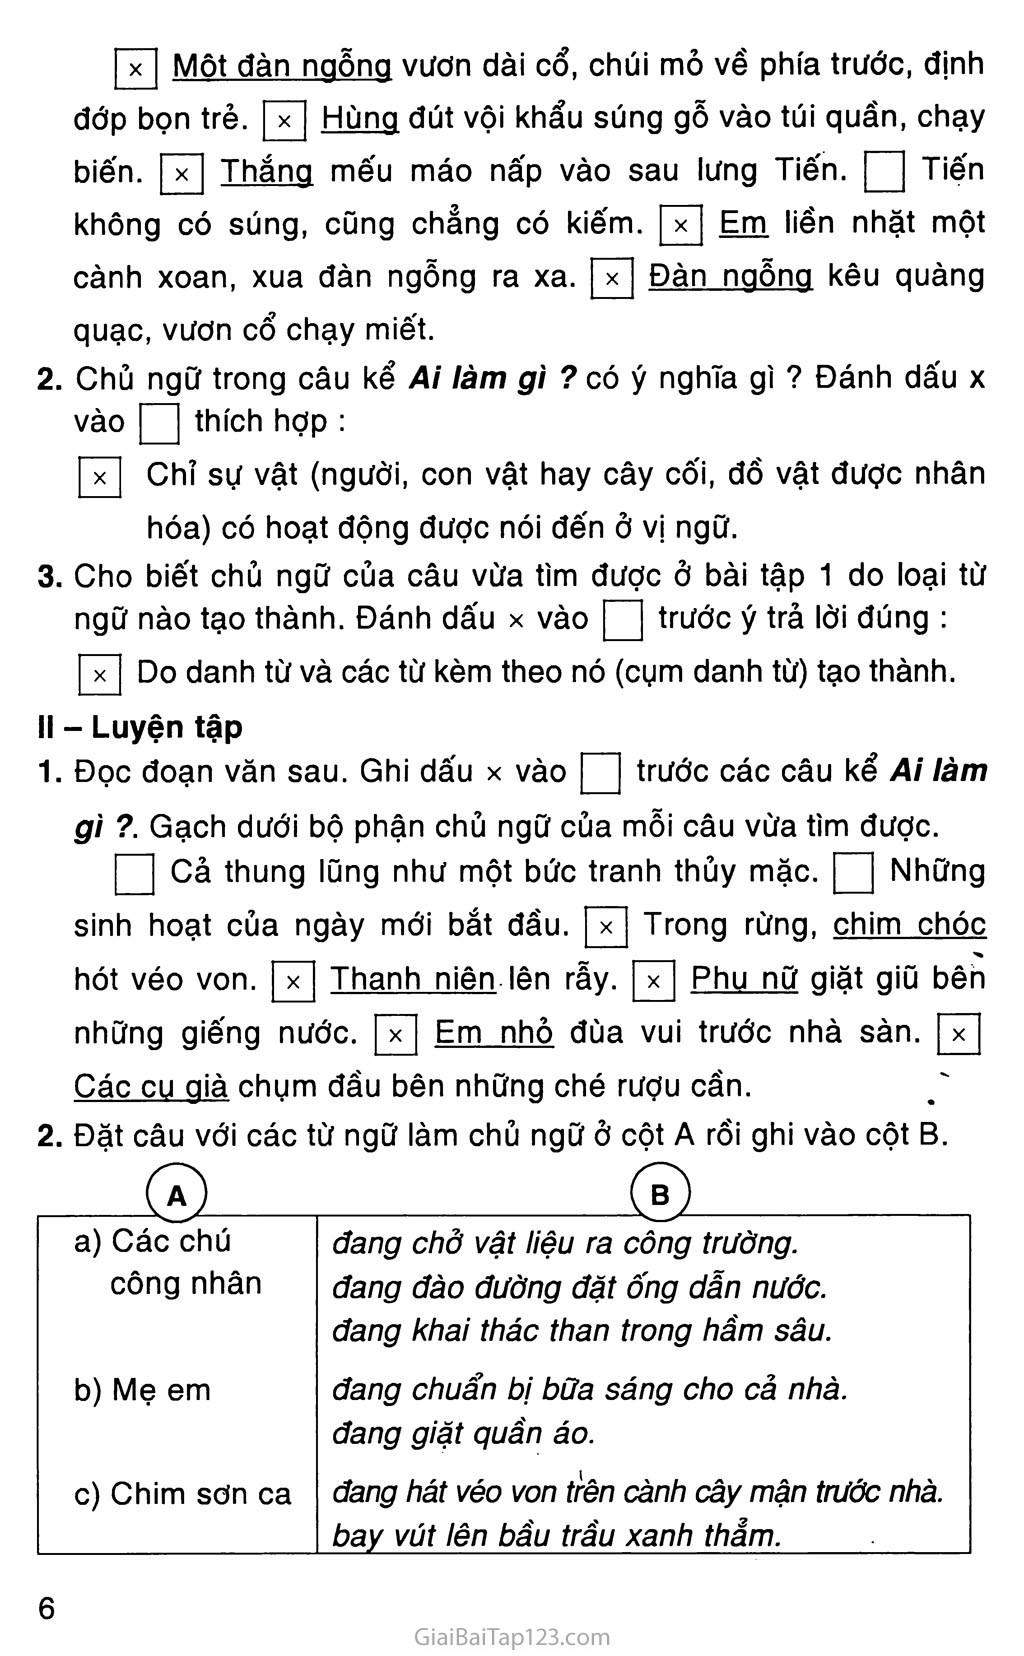 Vở bài tập Tiếng Việt lớp 4 Tập 2 trang 86, 87